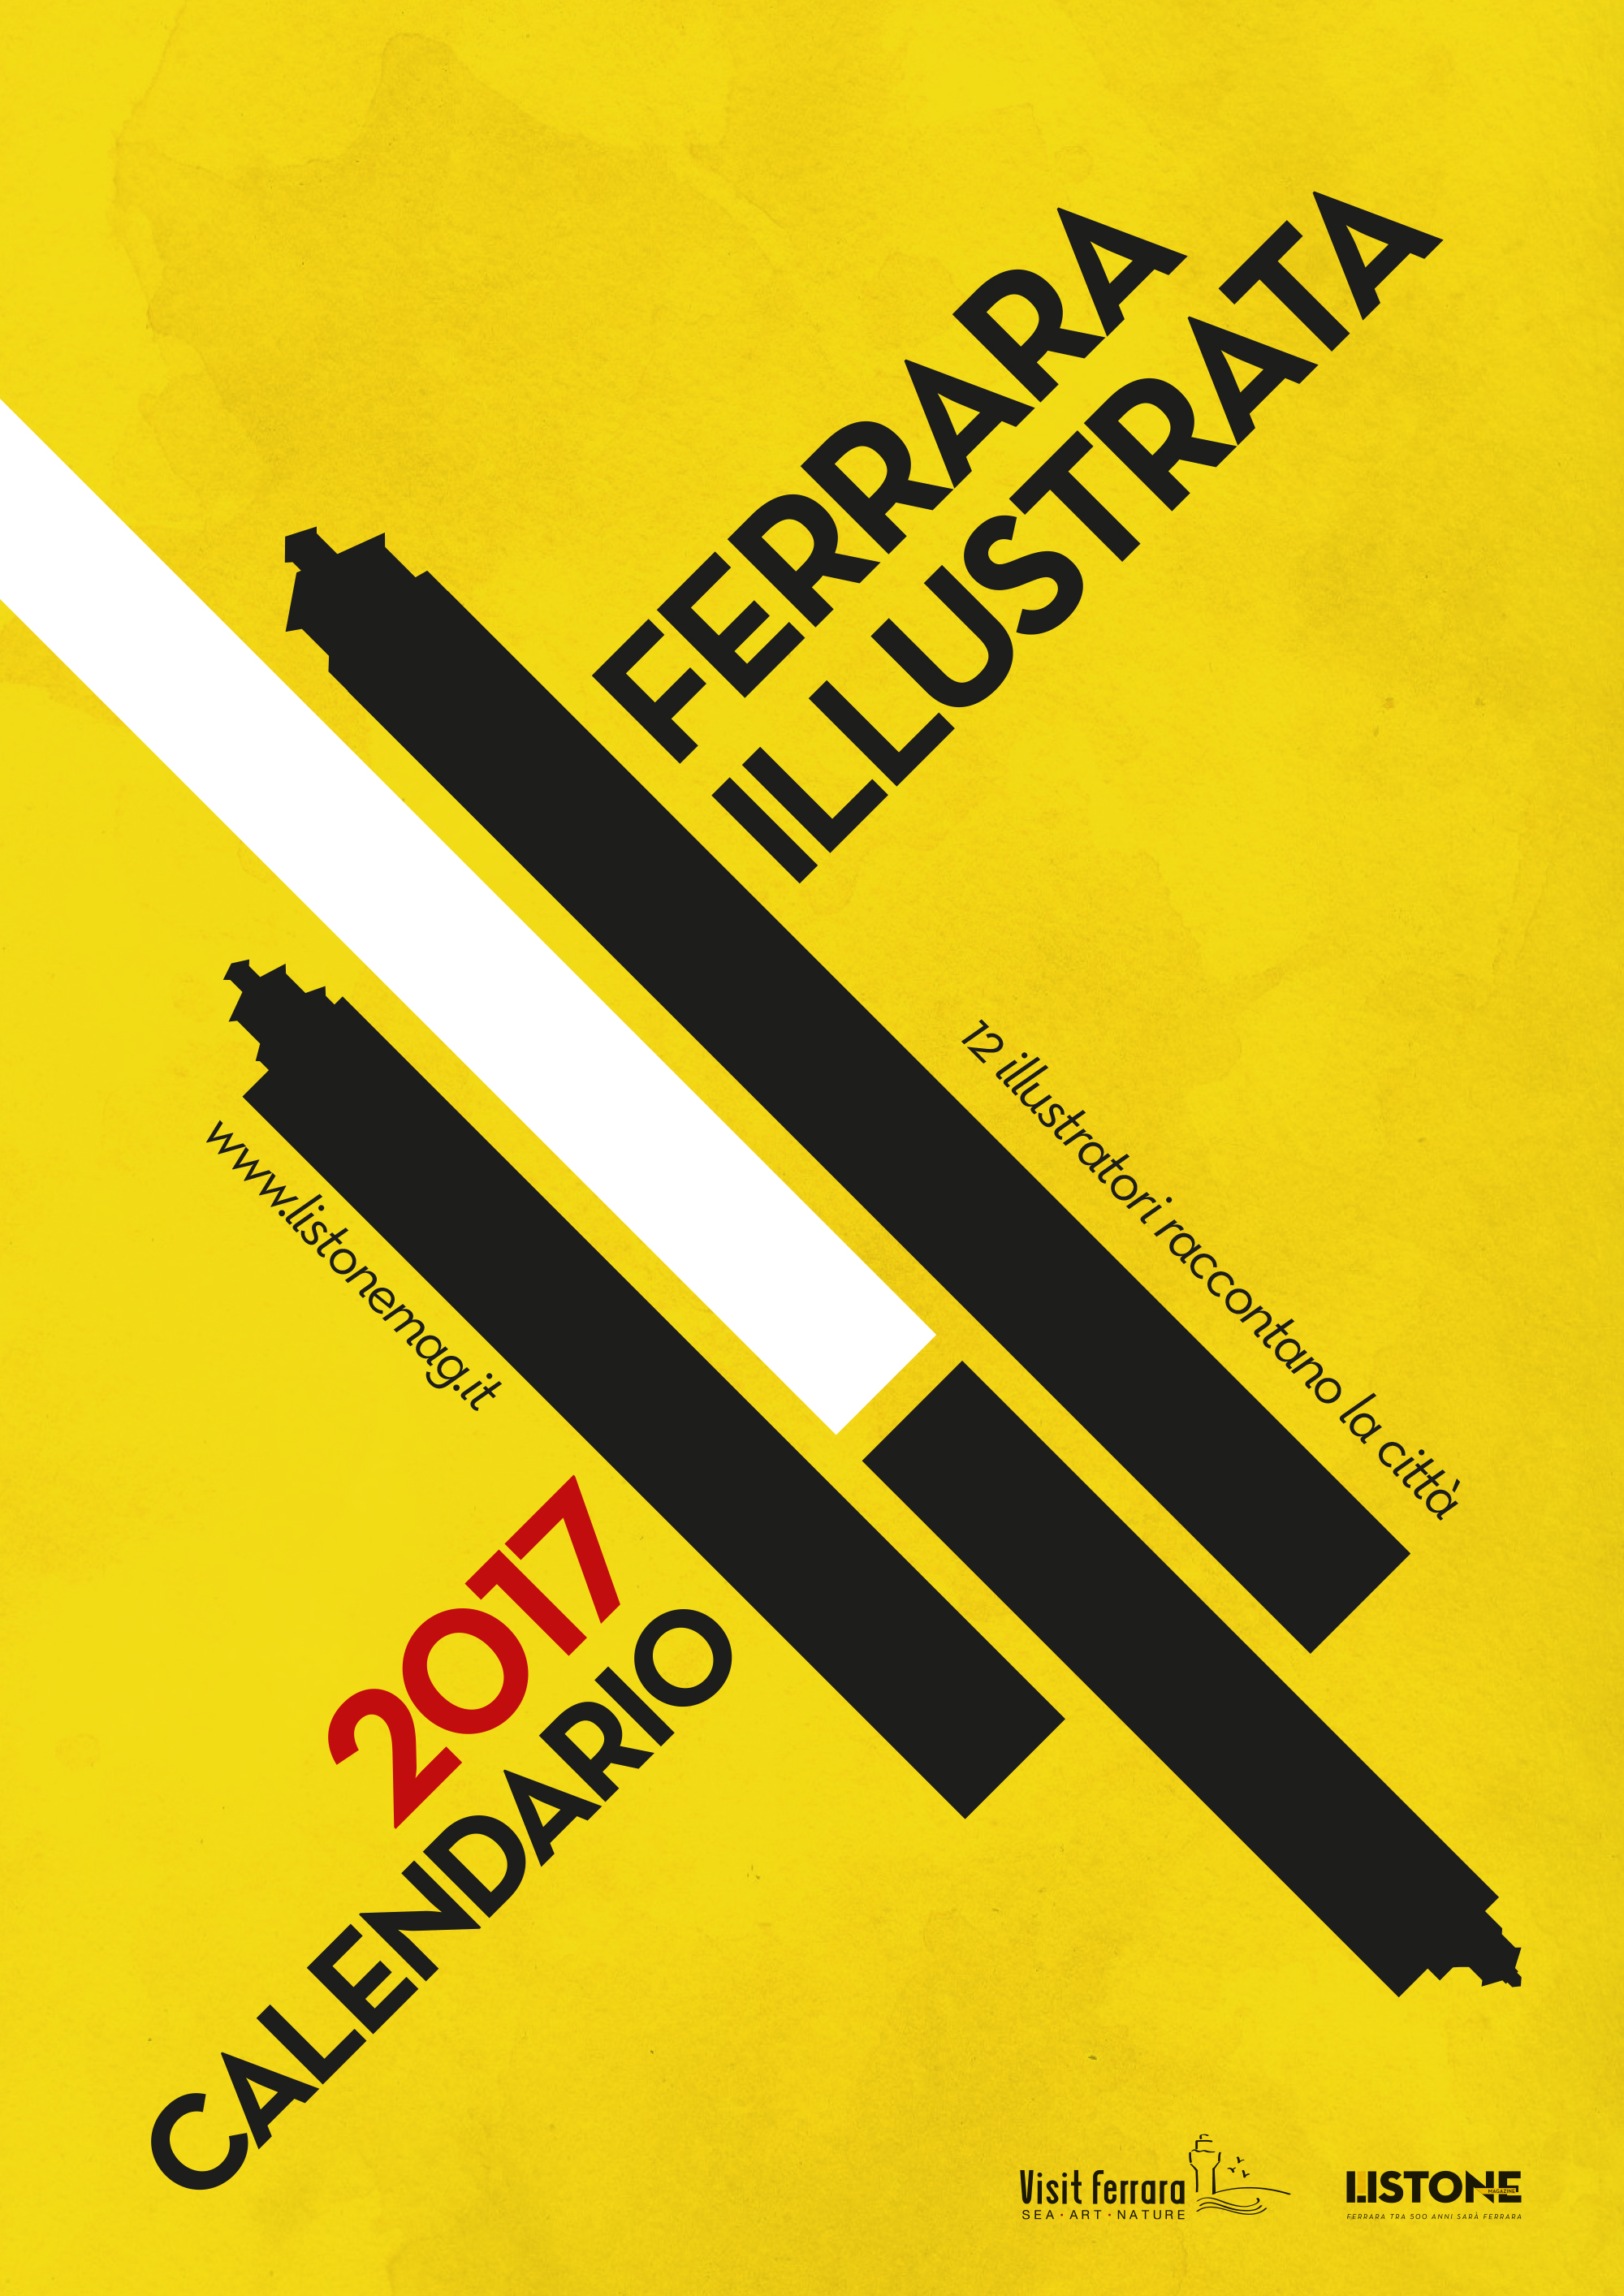 Featured image for “Calendario Ferrara illustrata 2017”